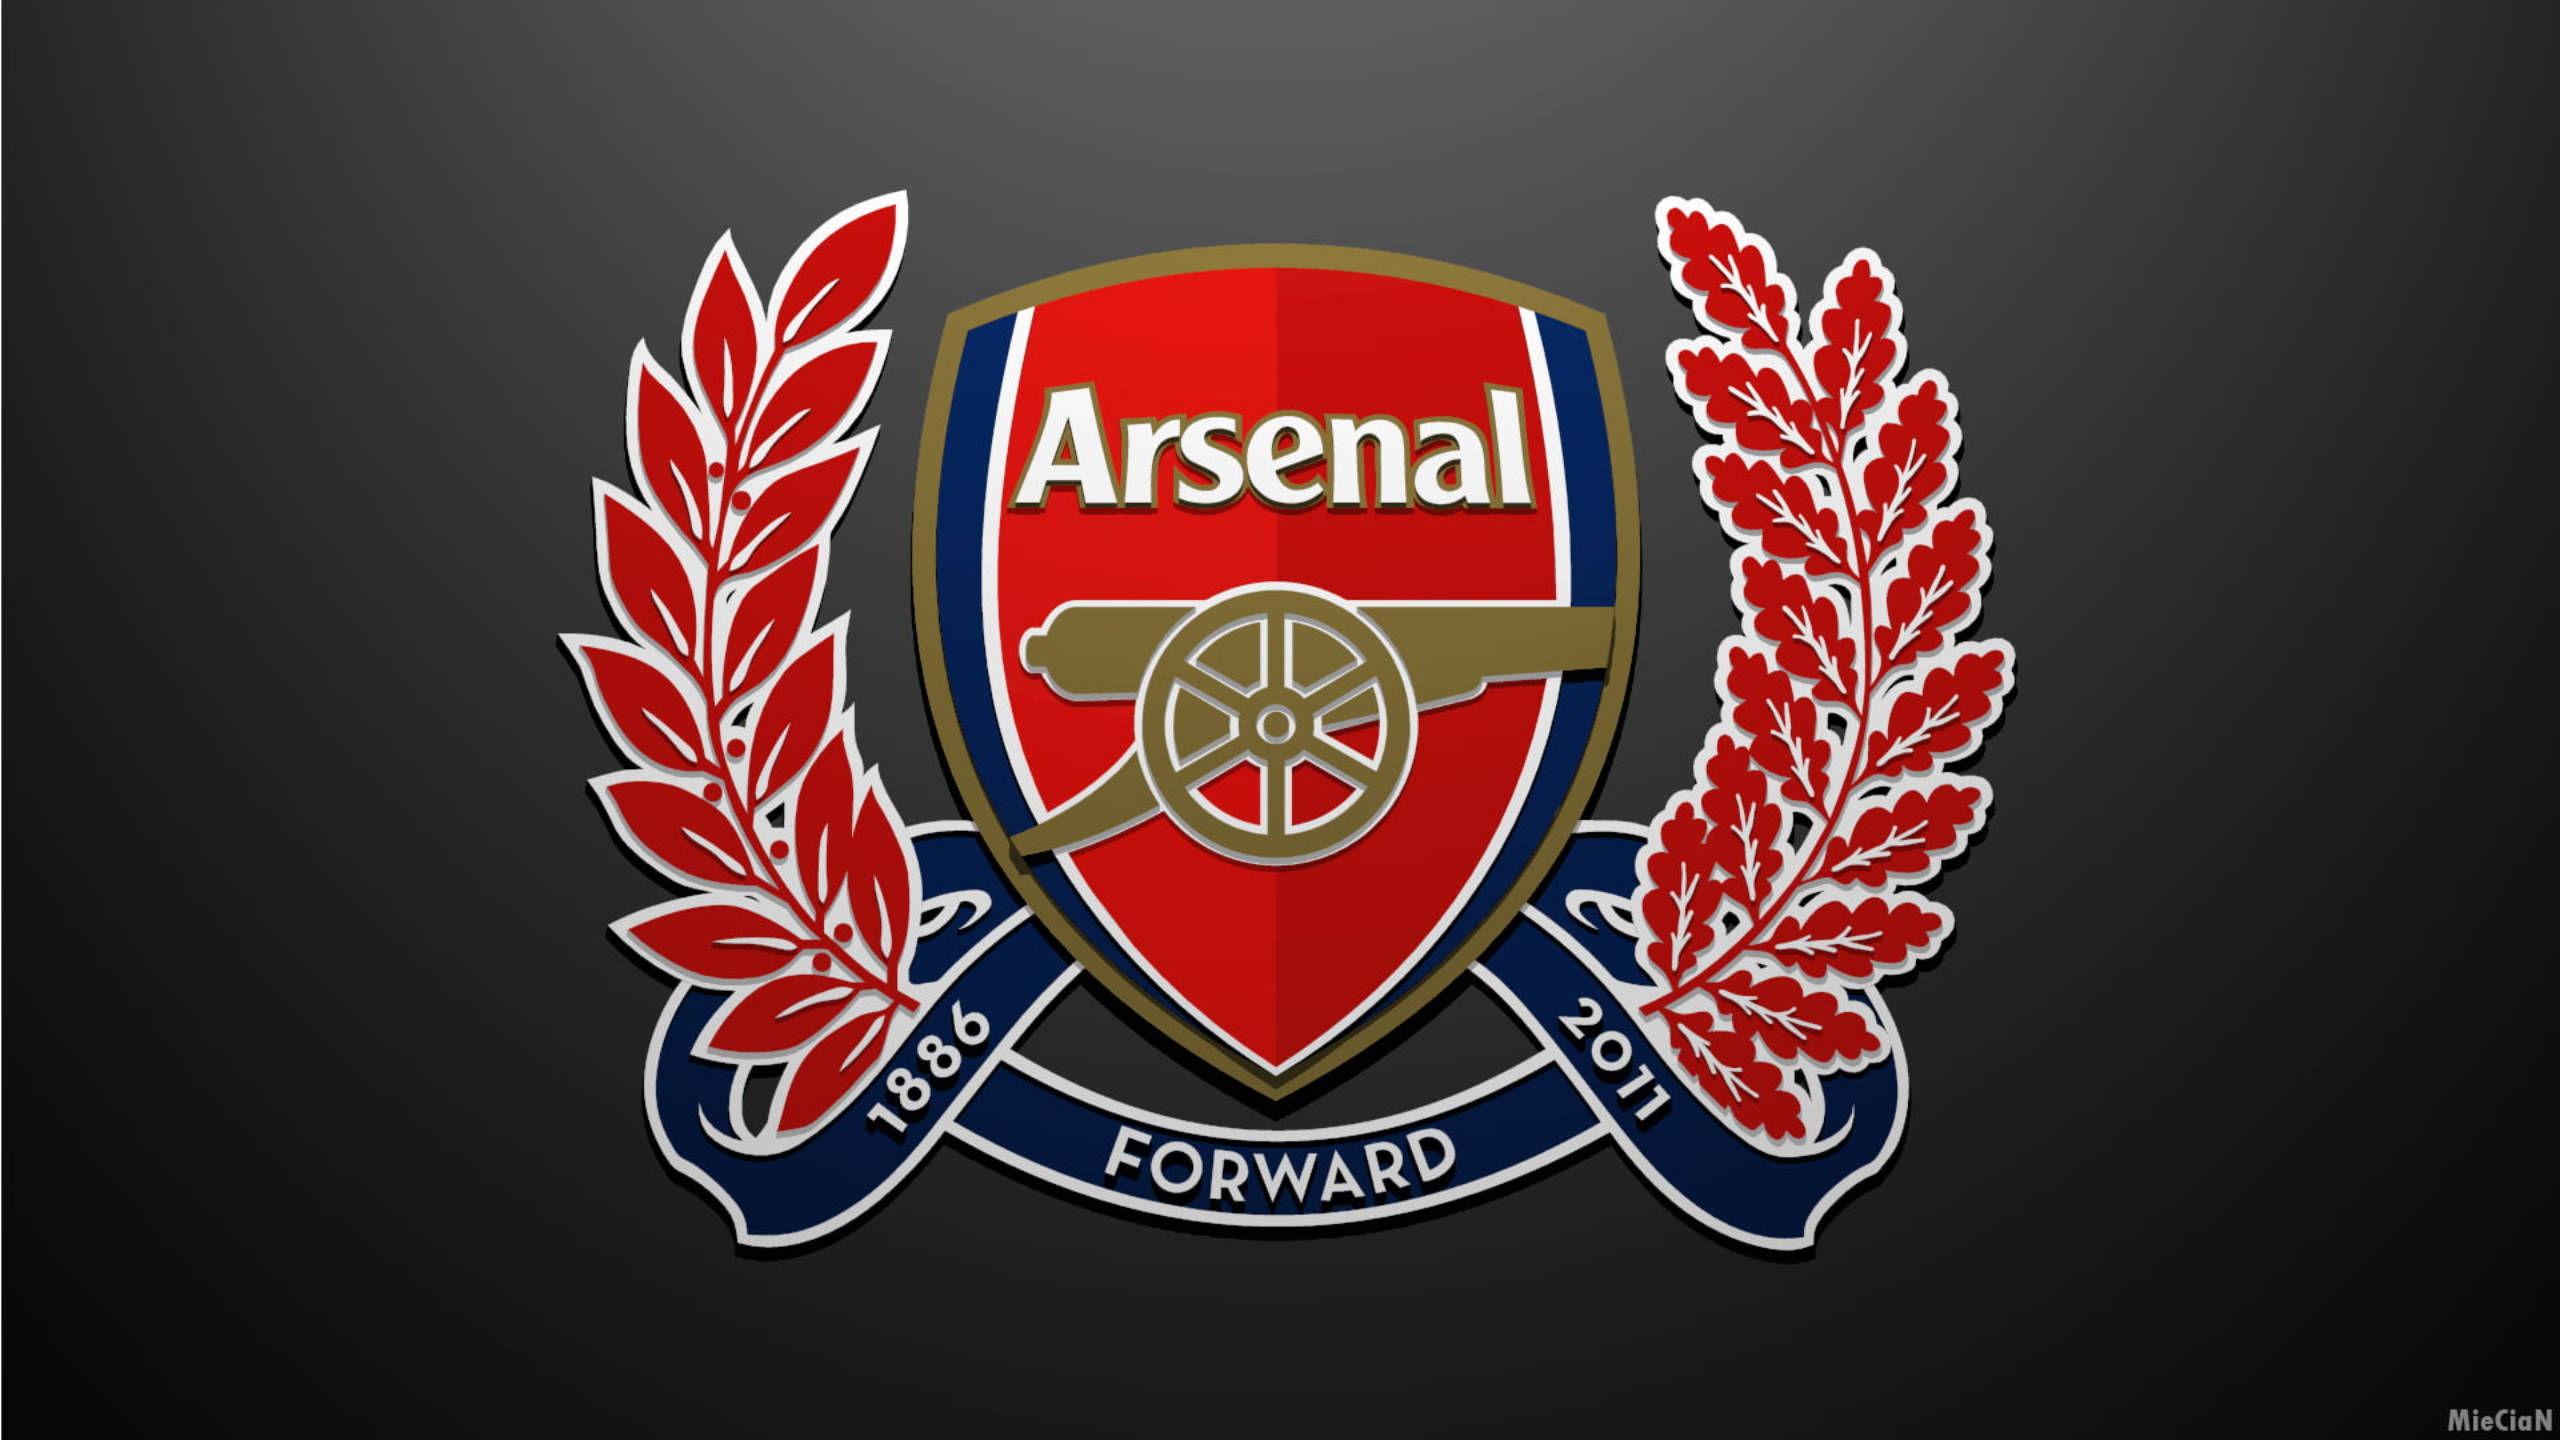 Арсенал логотип. Арсенал футбольный клуб лого. Эмблема клуба Арсенал Лондон. Арсенал (футбольный клуб, Лондон). Арсенал Англия футбольный клуб лого.